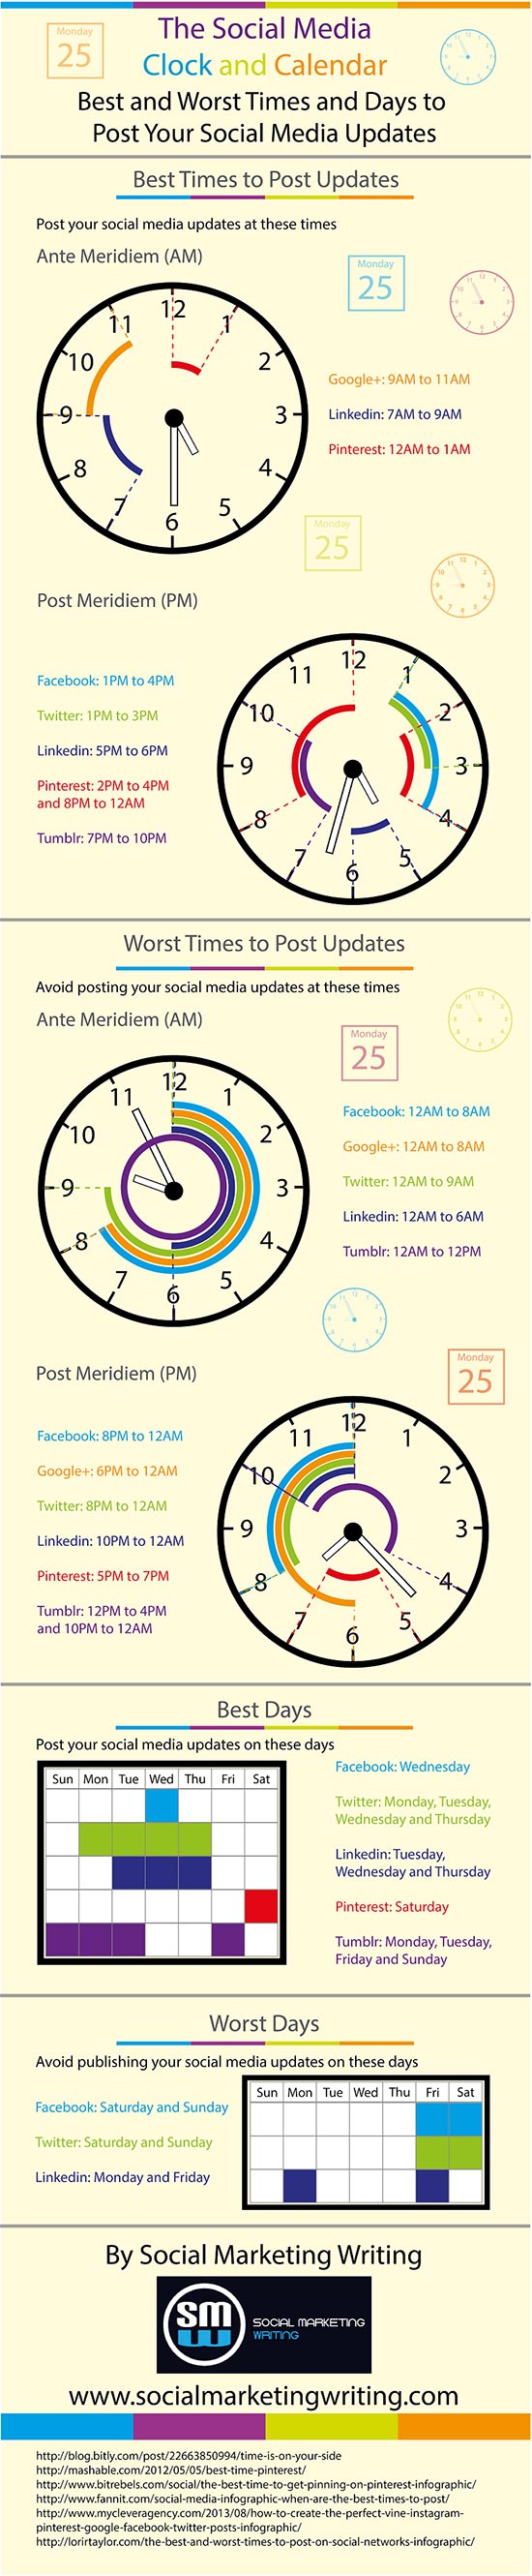 Social Media: a che ora ed in che giorno postare? - Infografica